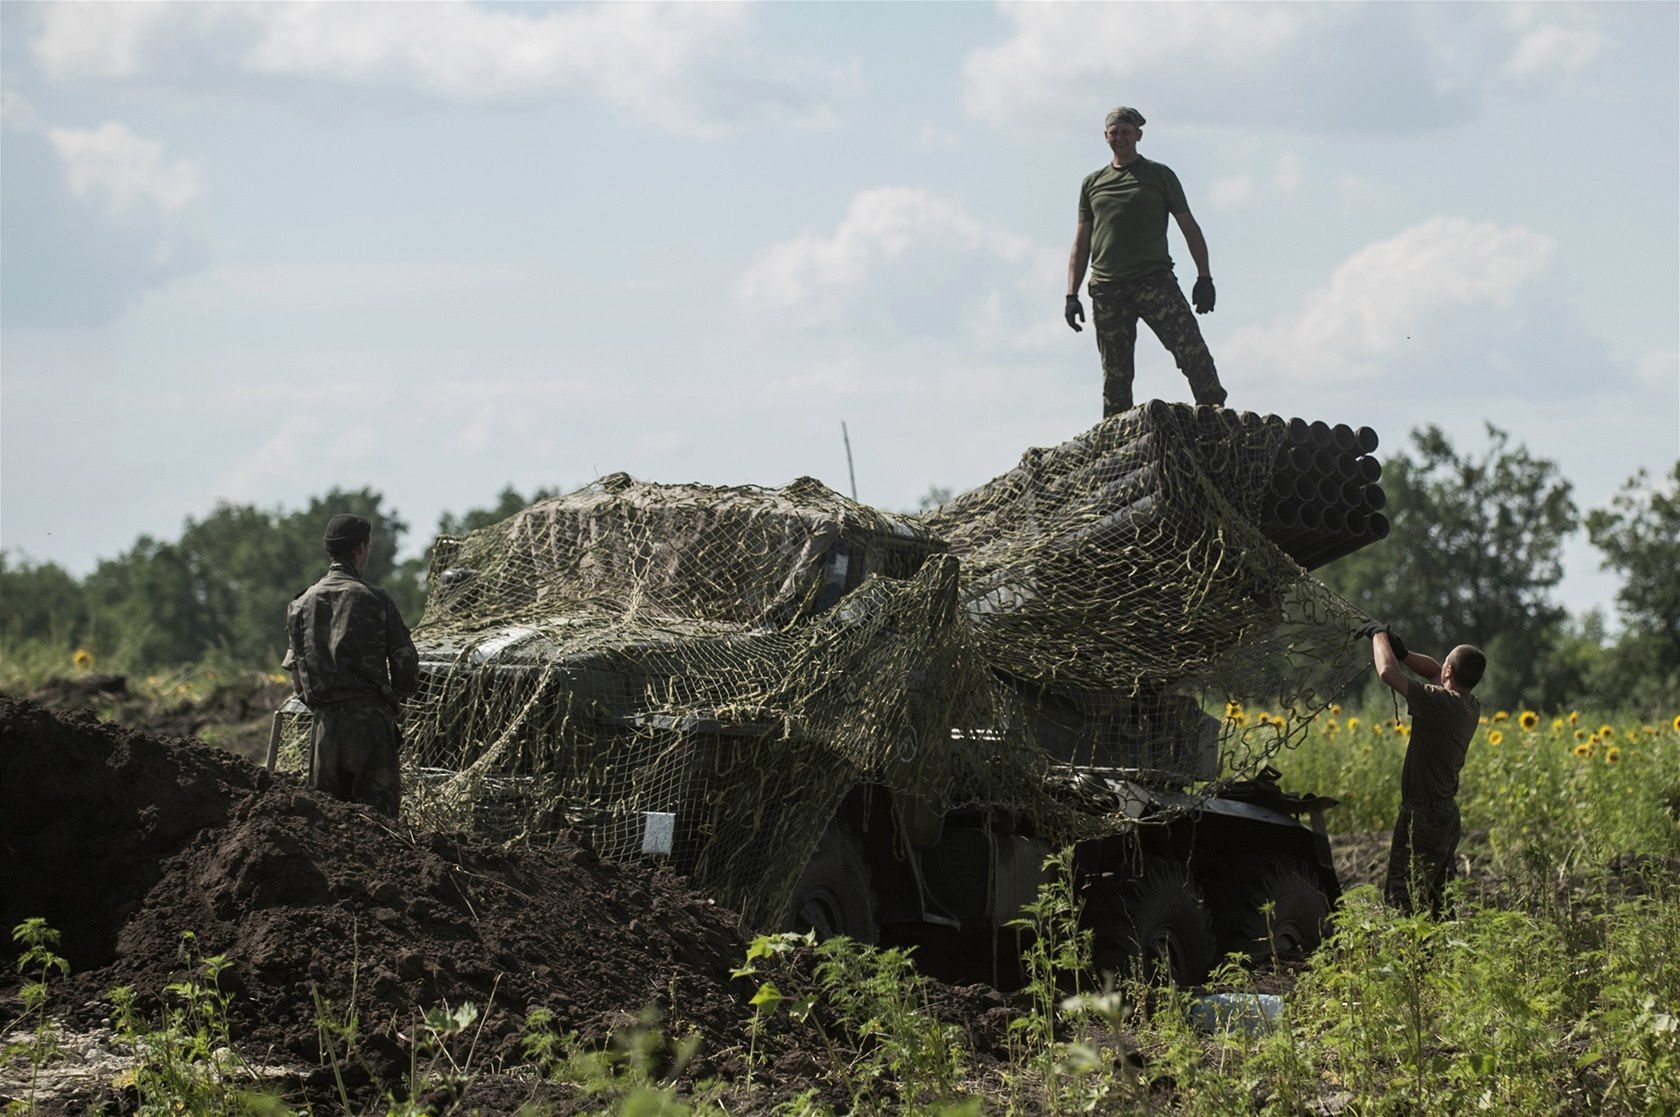 Dělostřelectvo v ukrajinském konfliktu